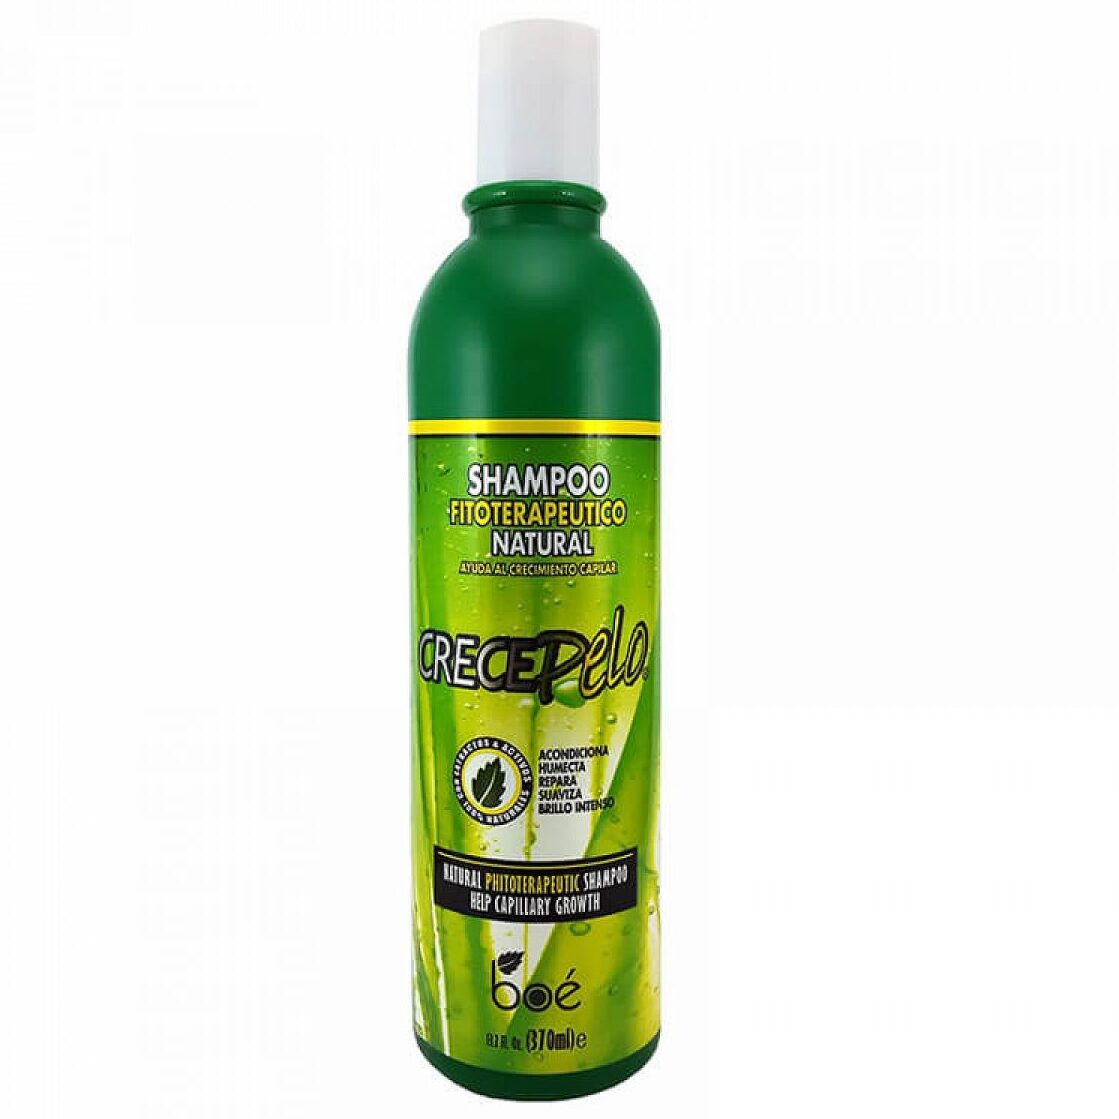 Crece Pelo Shampoo 370 ml